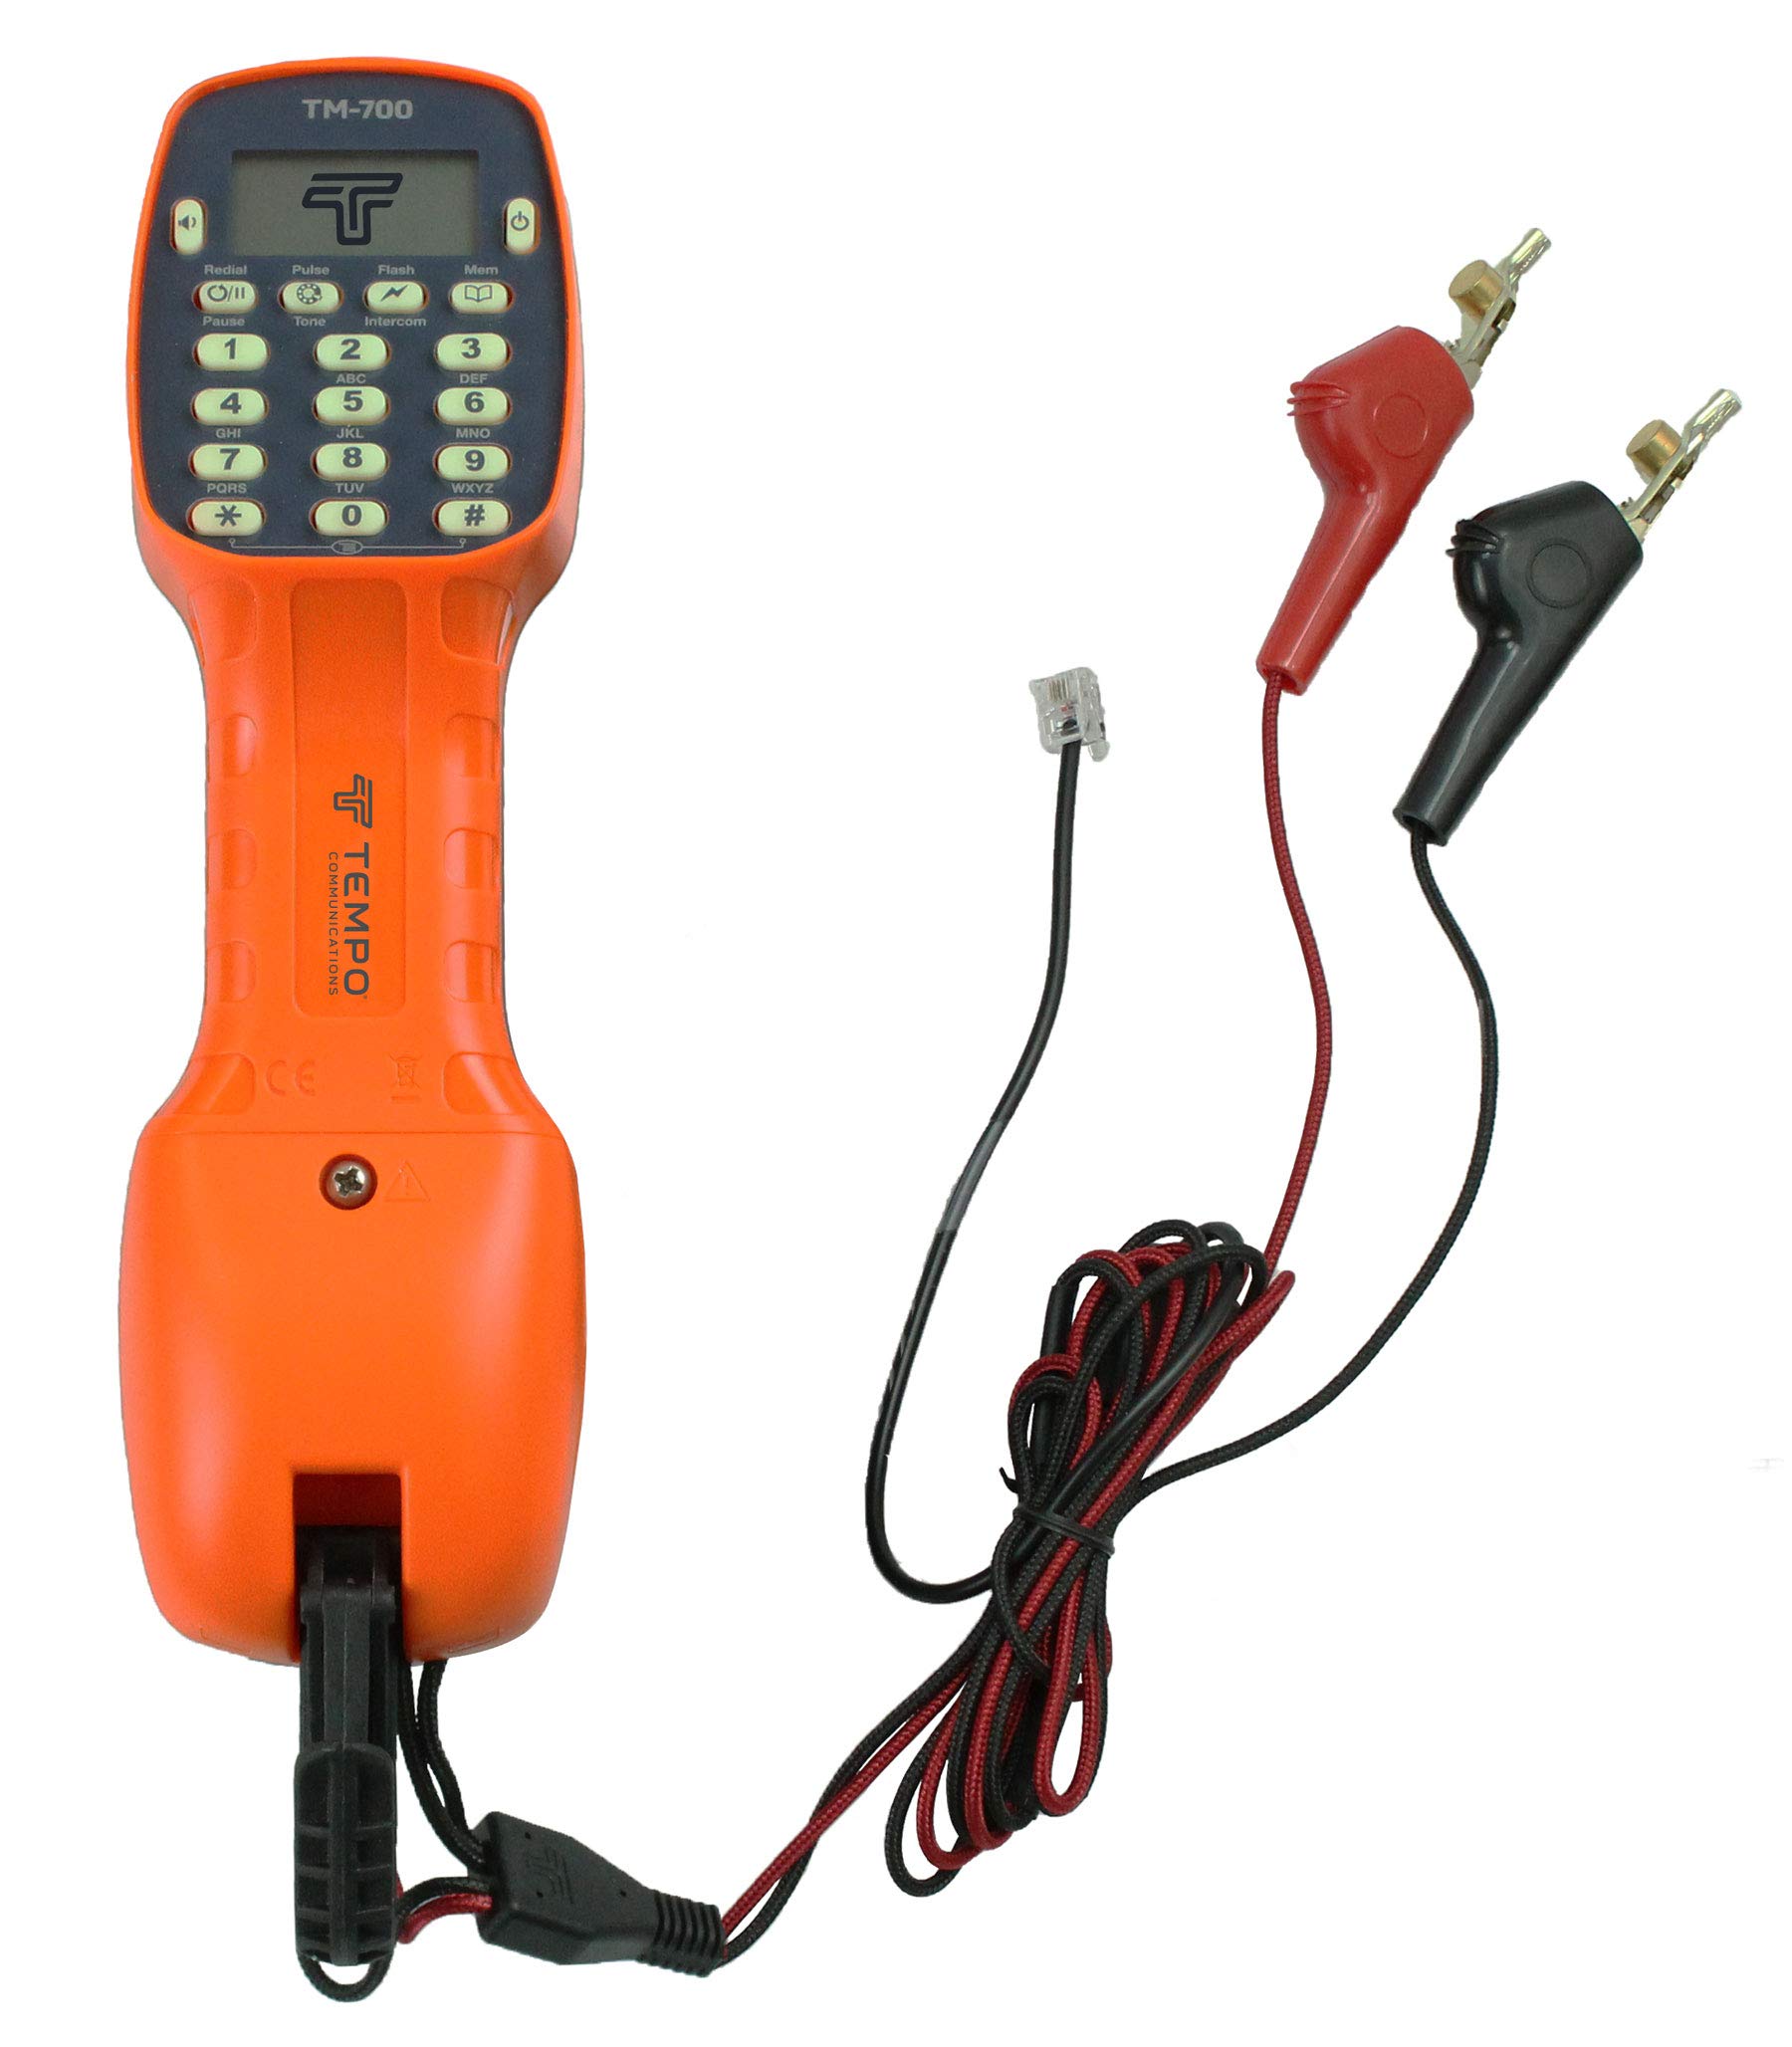 TEMPO TM-700 Lineman Kit de test téléphonique avec écran LCD et clips ABN – Qualité professionnelle (dernier modèle)